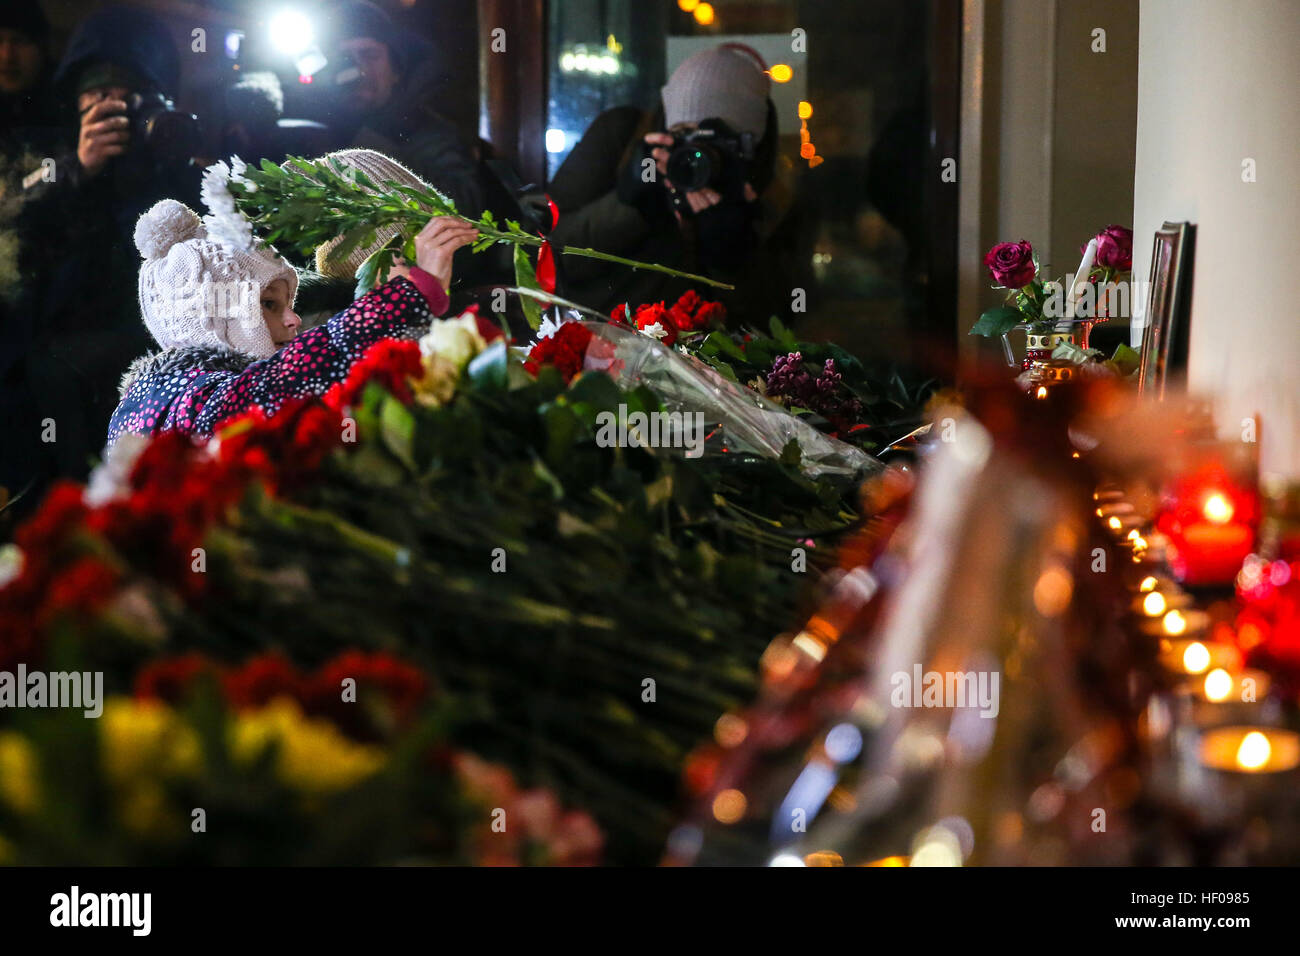 Moscou, Russie. 25 Décembre, 2016. Les gens déposent des fleurs à l'Alexandrov Hall, une salle de répétition de l'Ensemble Alexandrov, qu'ils rendent hommage aux victimes d'un accident d'avion du ministère russe de la Défense. Un avion Tupolev Tu-154 du ministère russe de la défense avec 92 personnes à bord s'est écrasé dans la mer Noire près de la ville de Sotchi le 25 décembre 2016. L'avion transportait des membres de l'Ensemble Alexandrov, des militaires russes et des journalistes à la base aérienne de Hmeymim en Syrie. Des fragments de l'avion ont été trouvés à environ 1,5 km de littoral Sotchi. © Victor Vytolskiy/Alamy Live News Banque D'Images